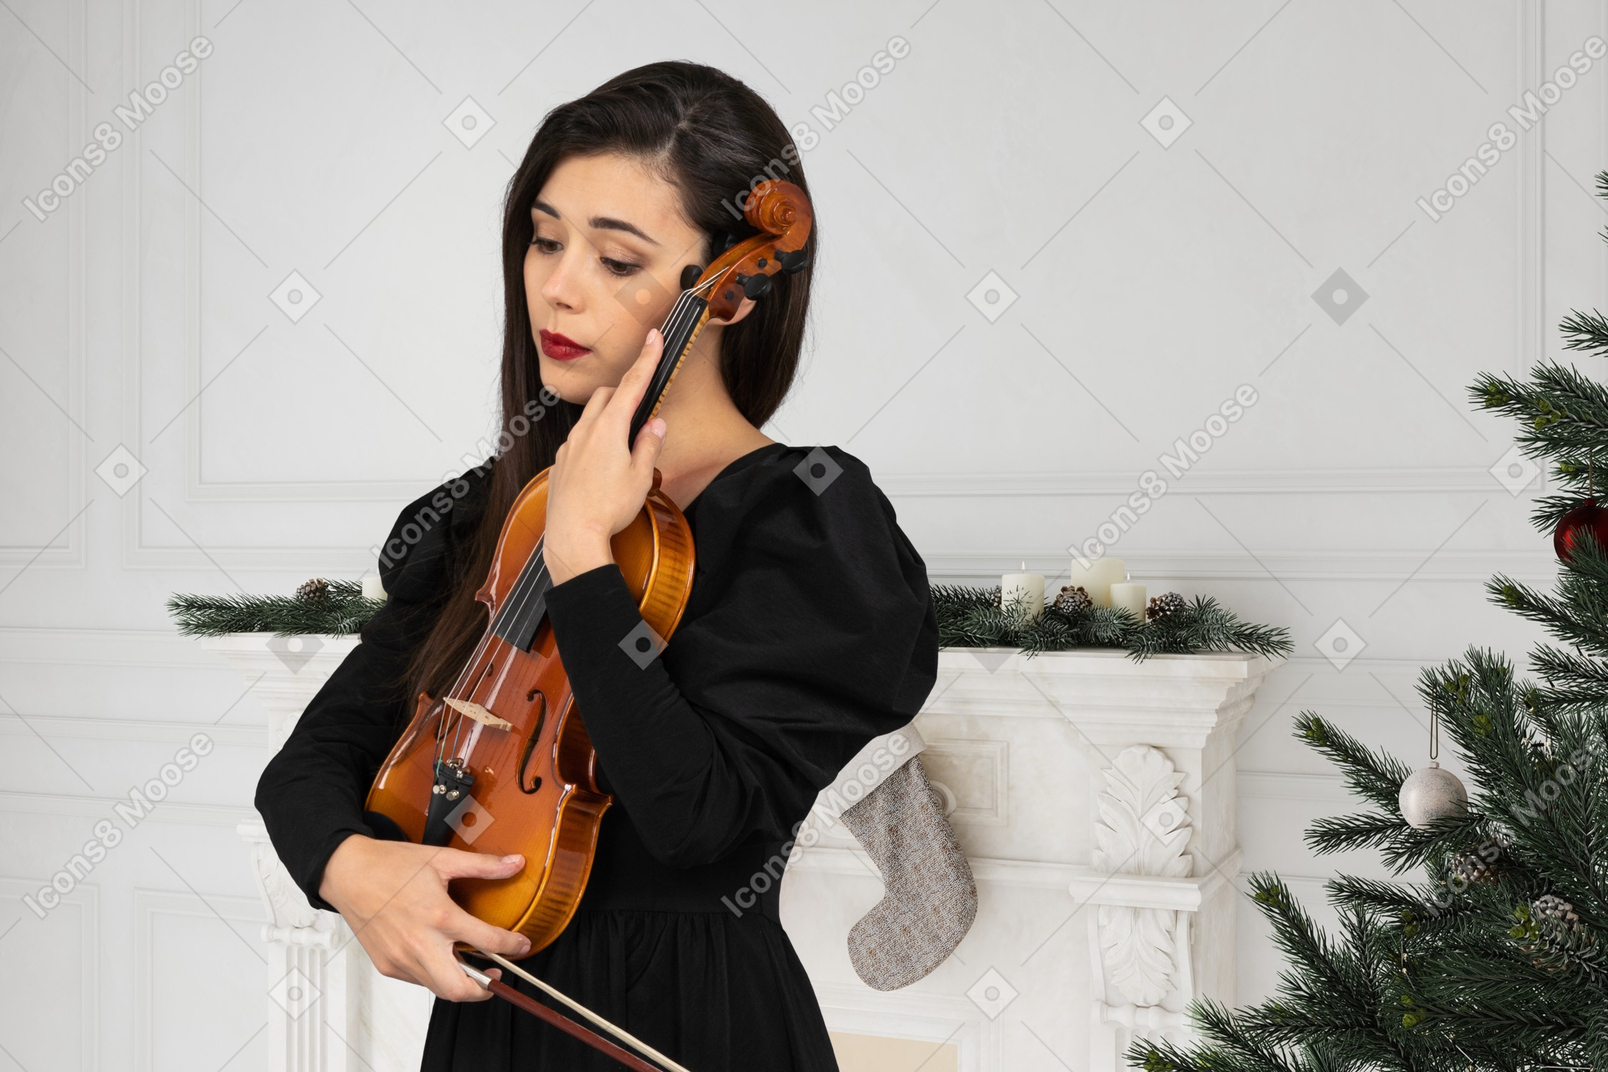 젊은 여자 크리스마스 선물로 바이올린을 얻었다